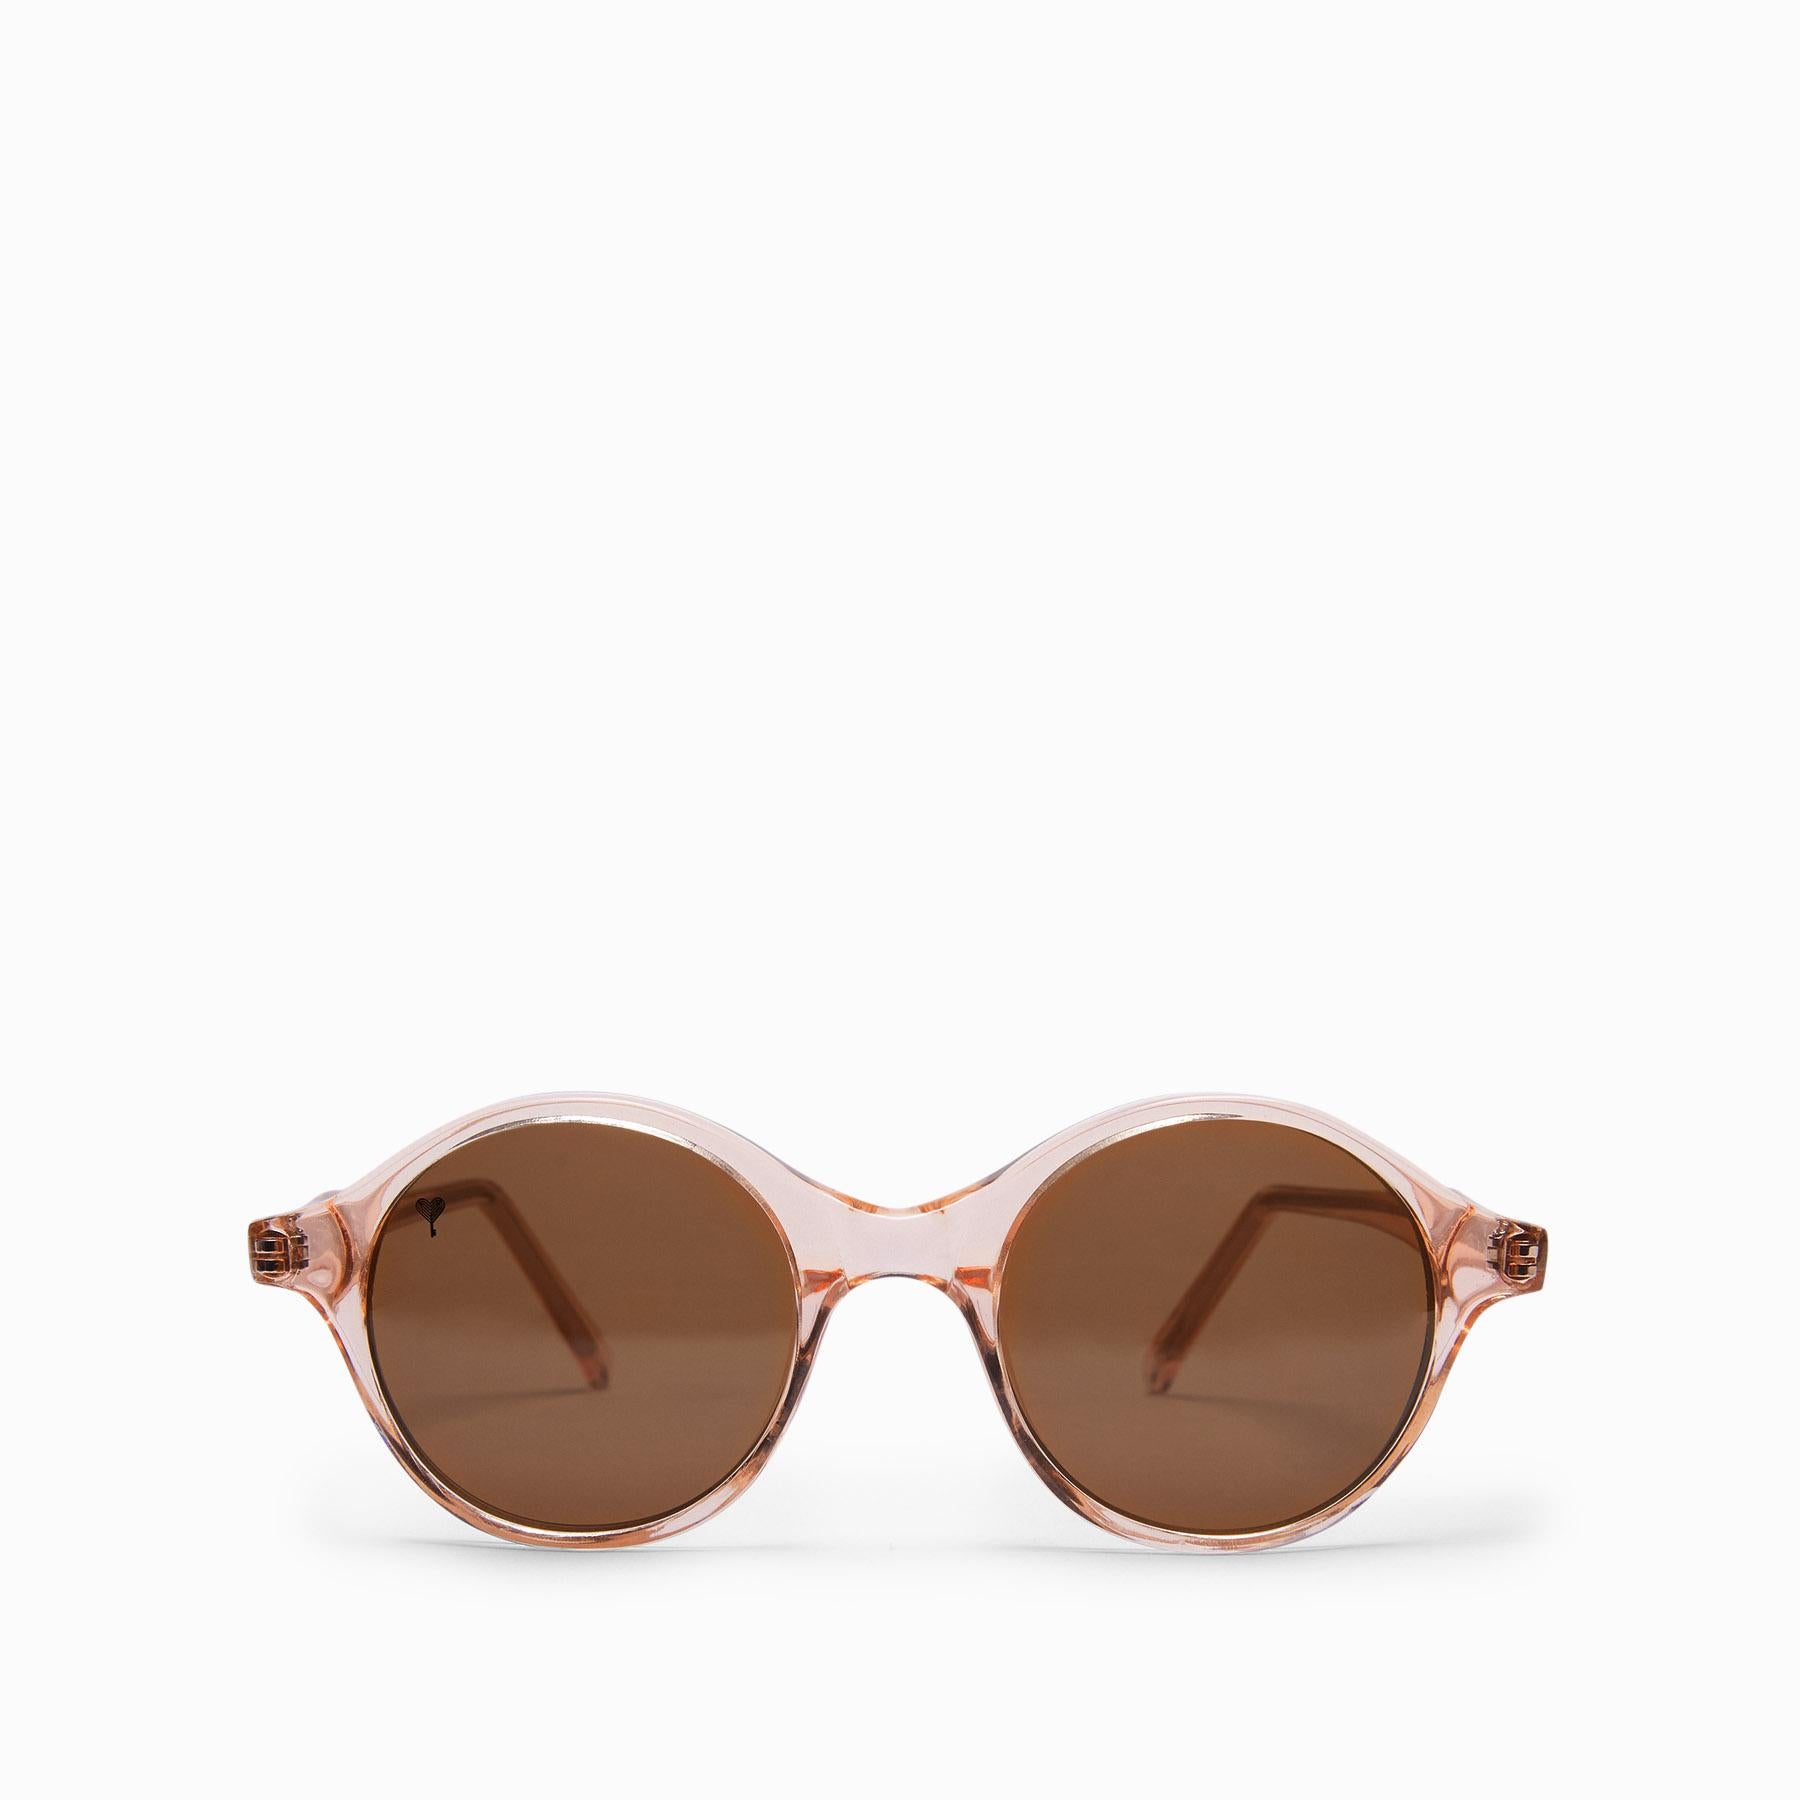 Blush Round Sunglasses